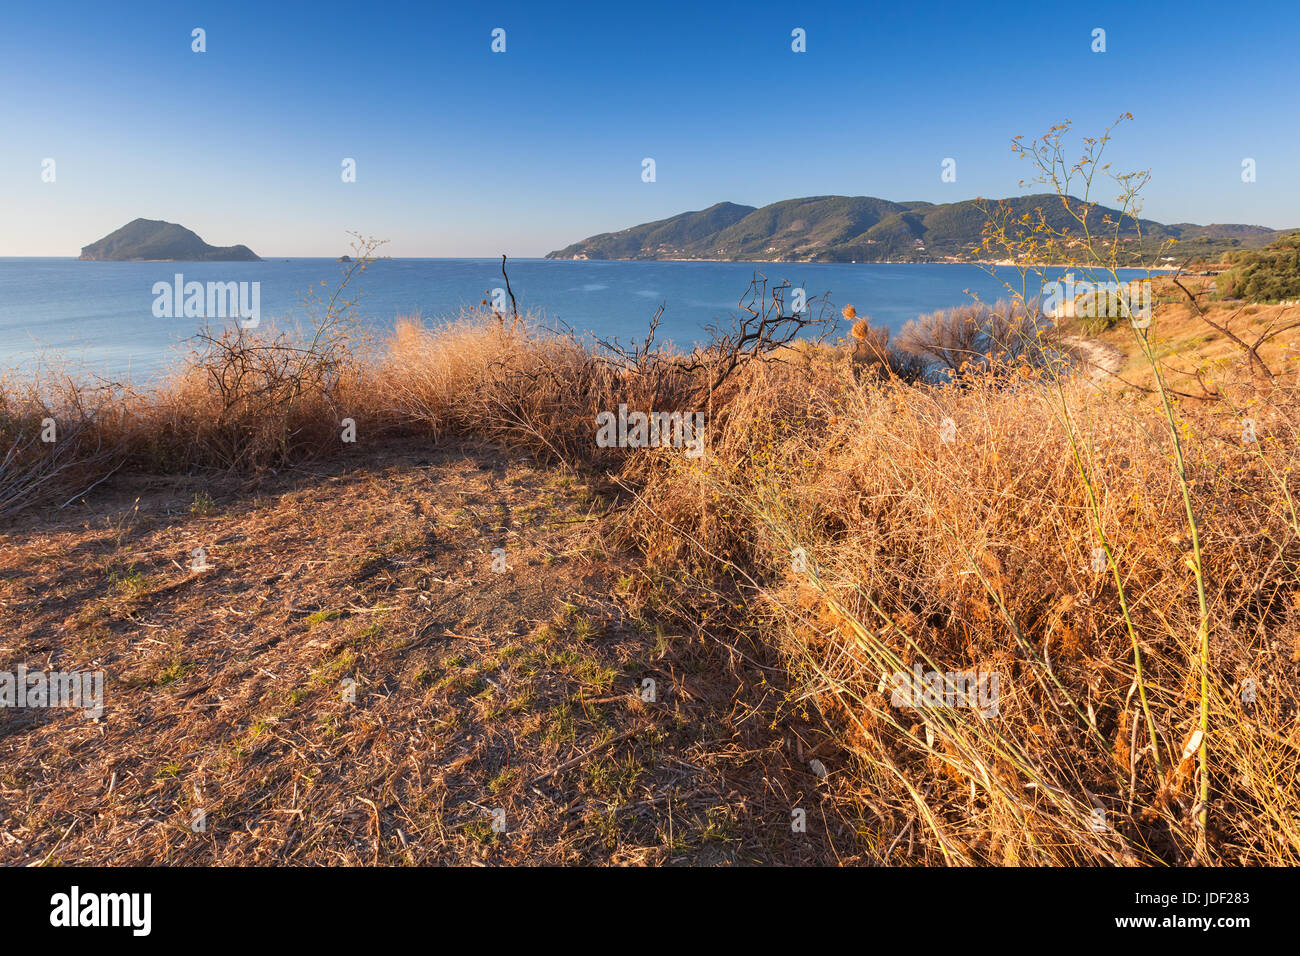 Trockenrasen auf der Küste von Zakynthos Island, Griechenland. Beliebte touristische Destination für den Sommerurlaub Stockfoto